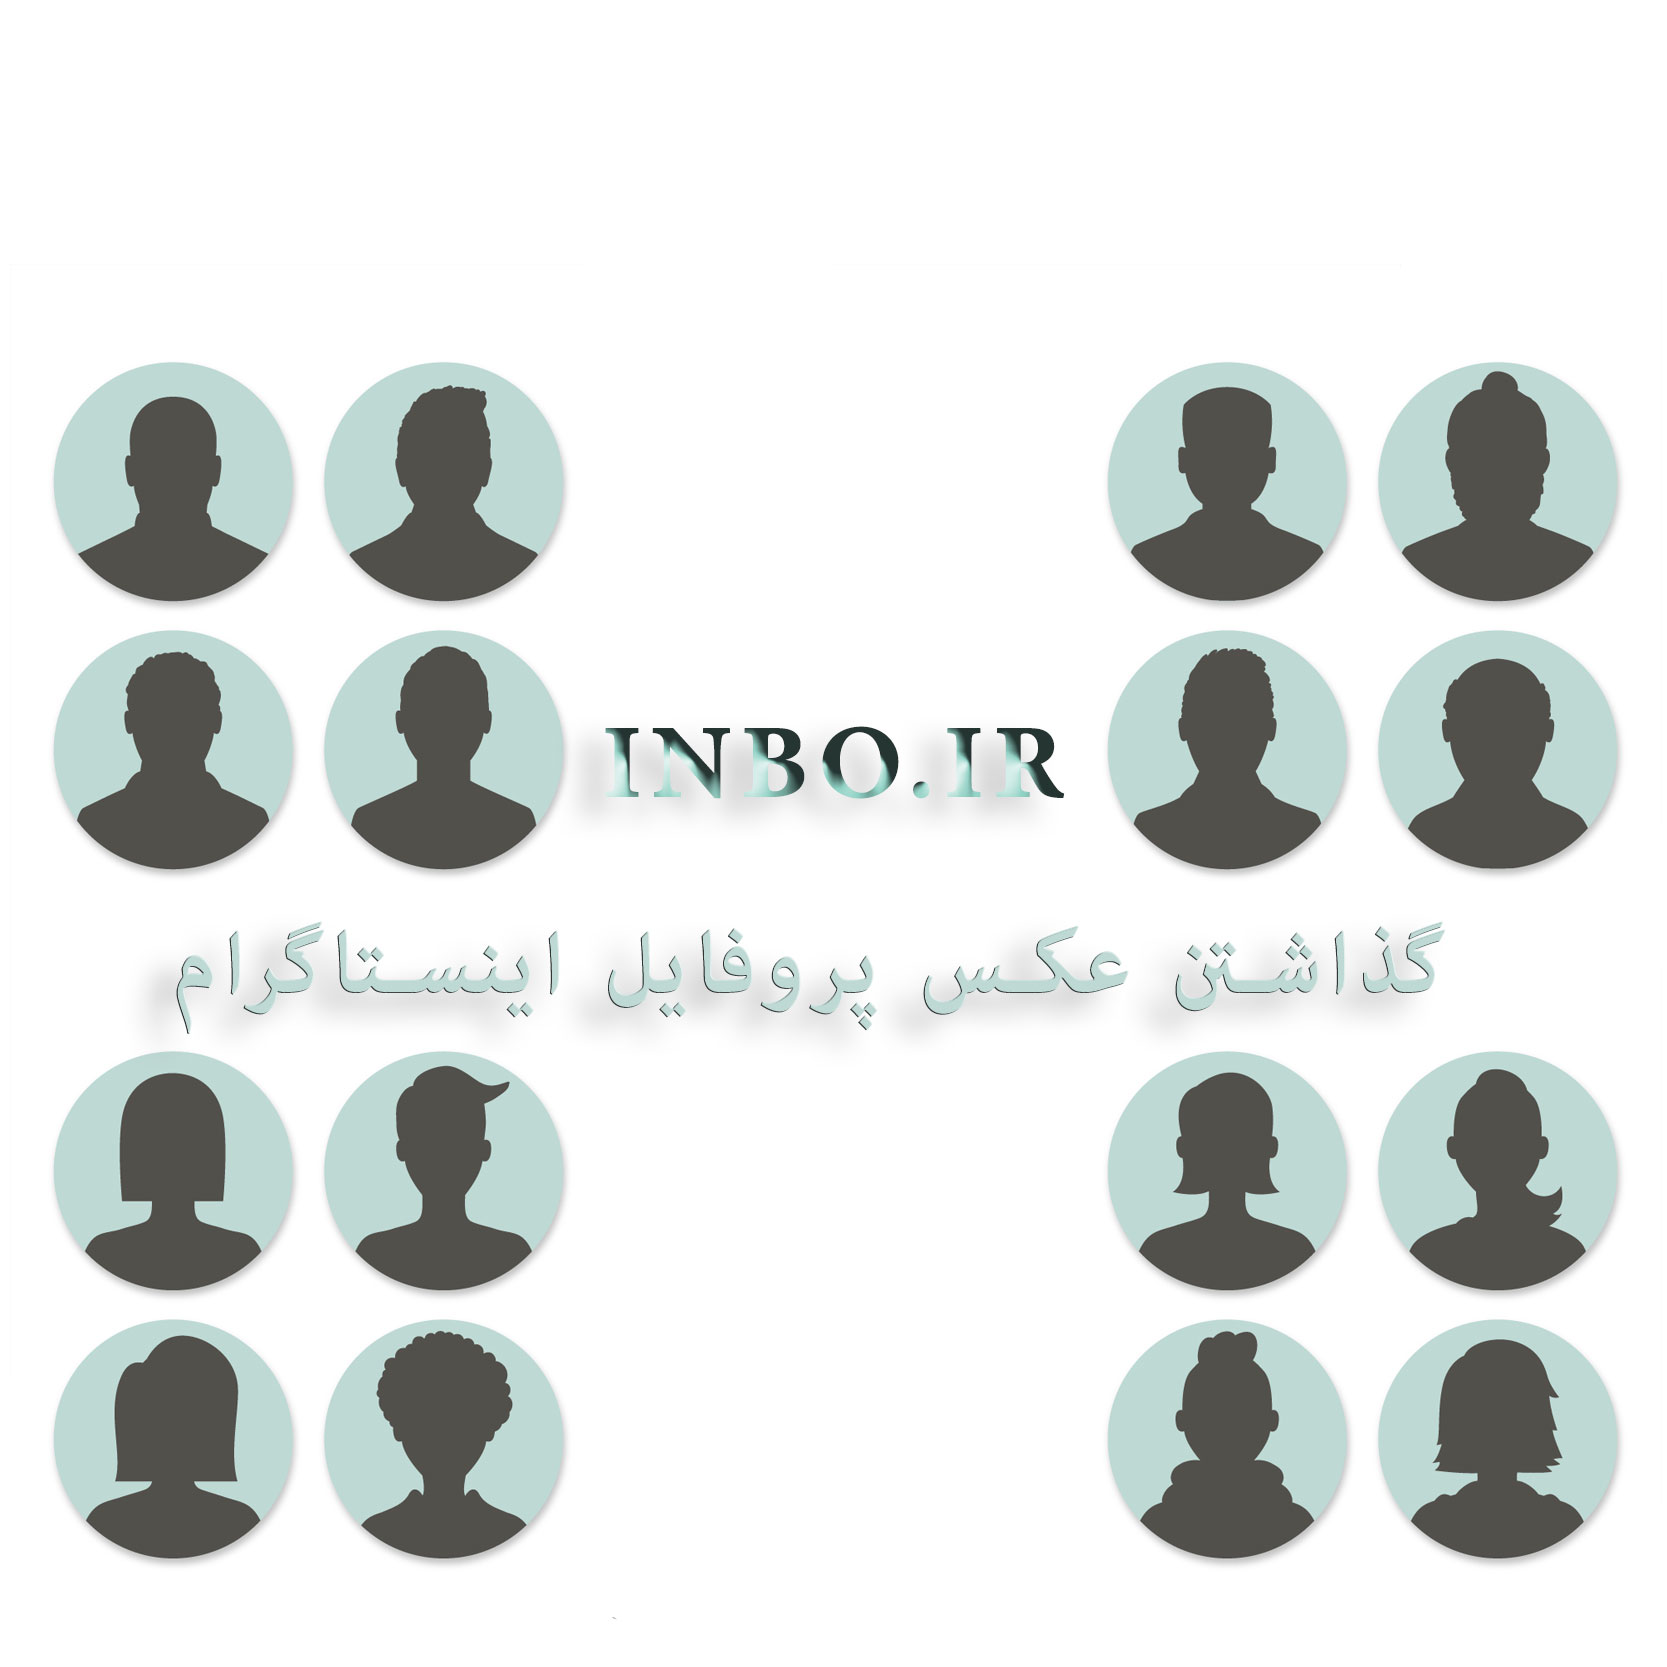 نحوه گذاشتن عکس پروفایل در اینستاگرام فارسی